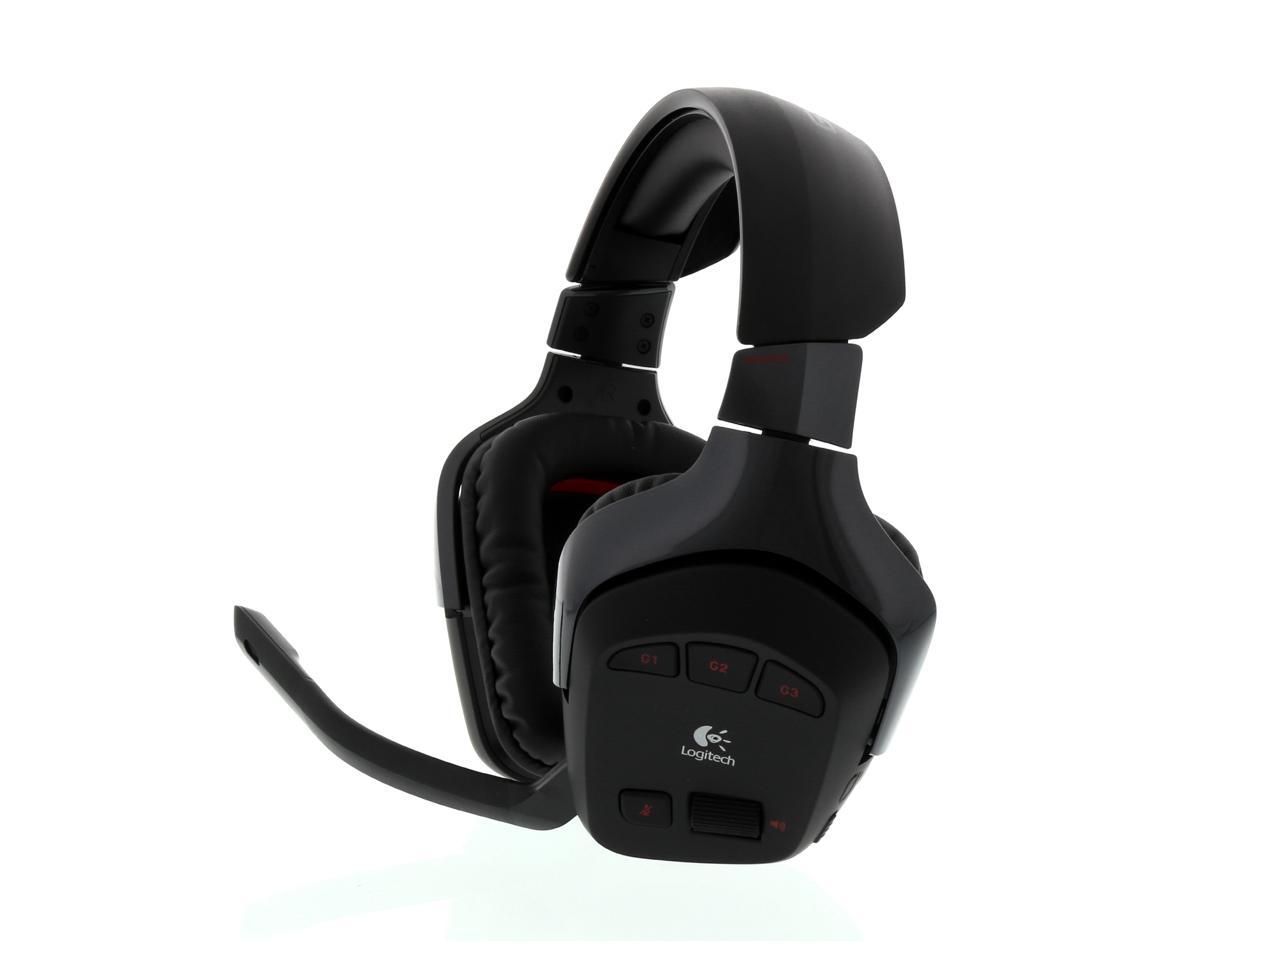 Verbetering Afgeschaft Elektrisch Logitech Wireless Gaming Headset G930 7.1 Wireless Headphones - Newegg.com